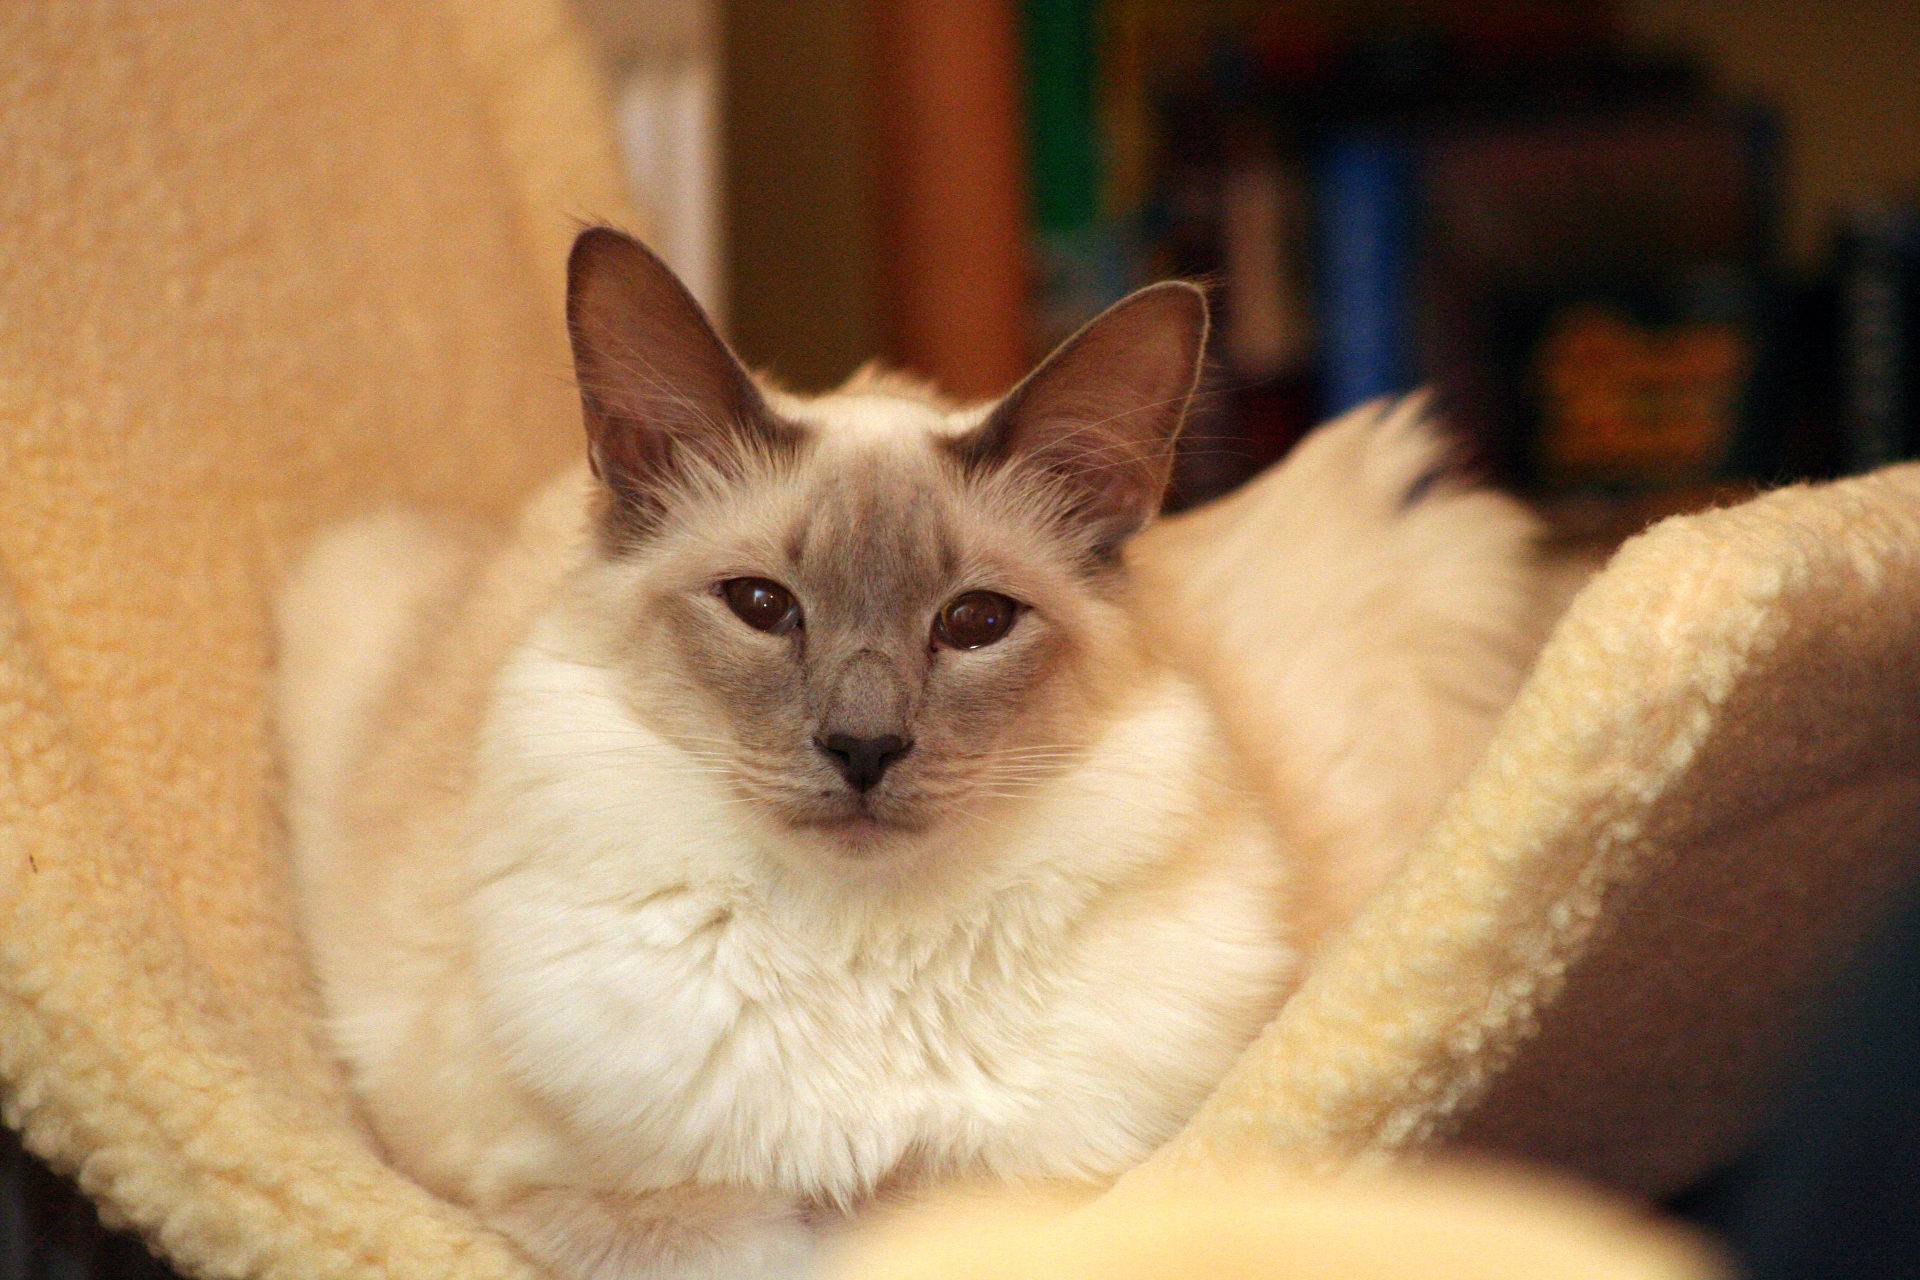 Балинезийская кошка: описание породы